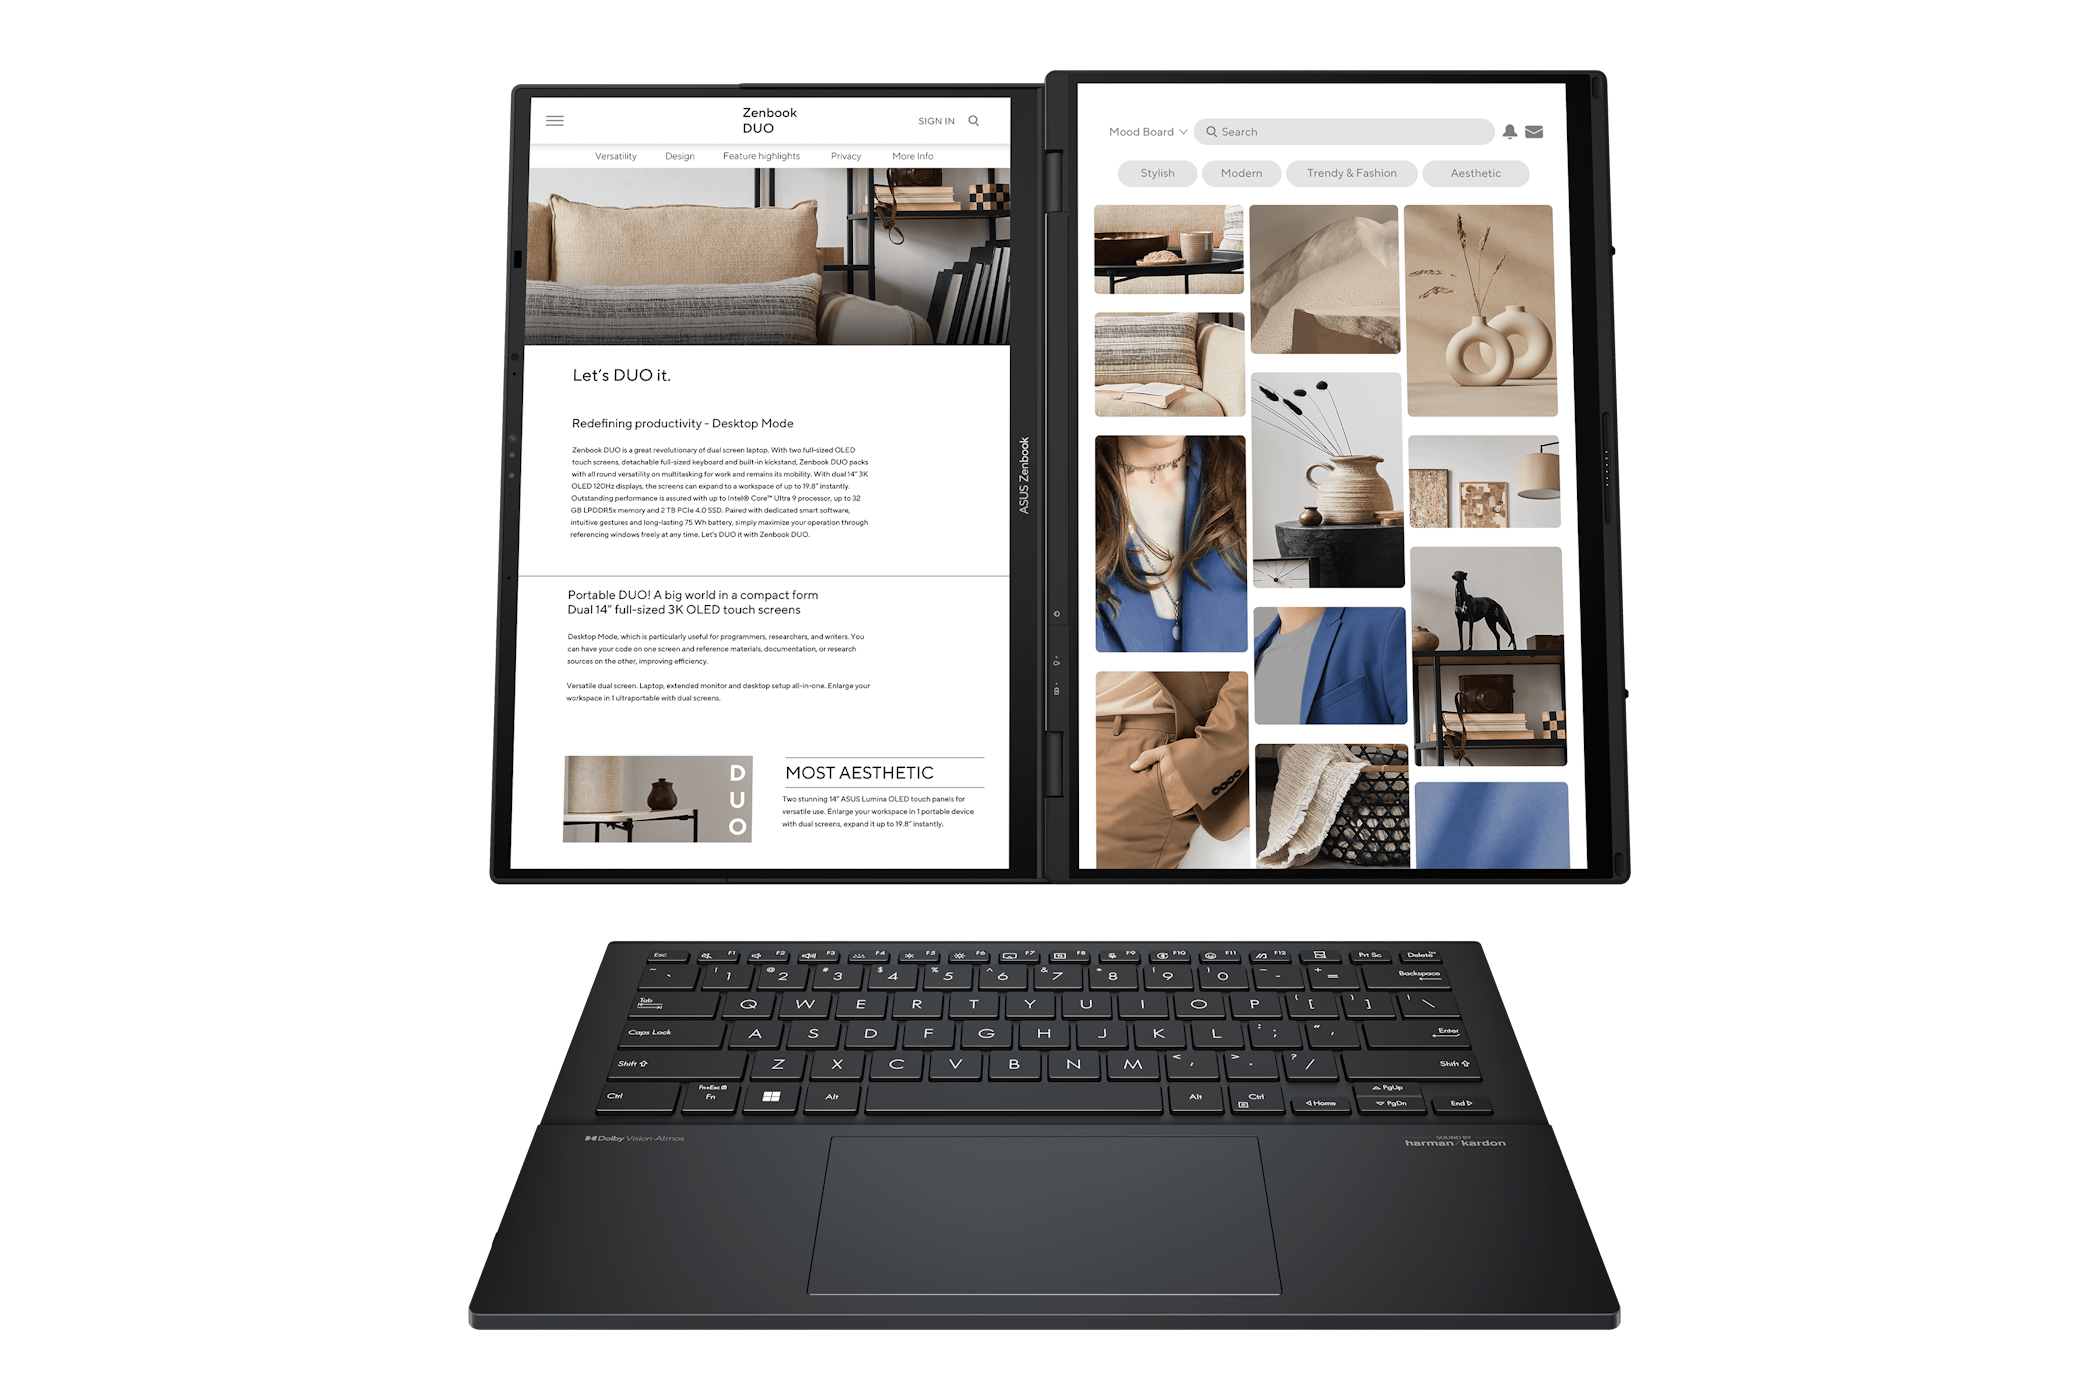 O laptop Zenbook Duo, modo desktop